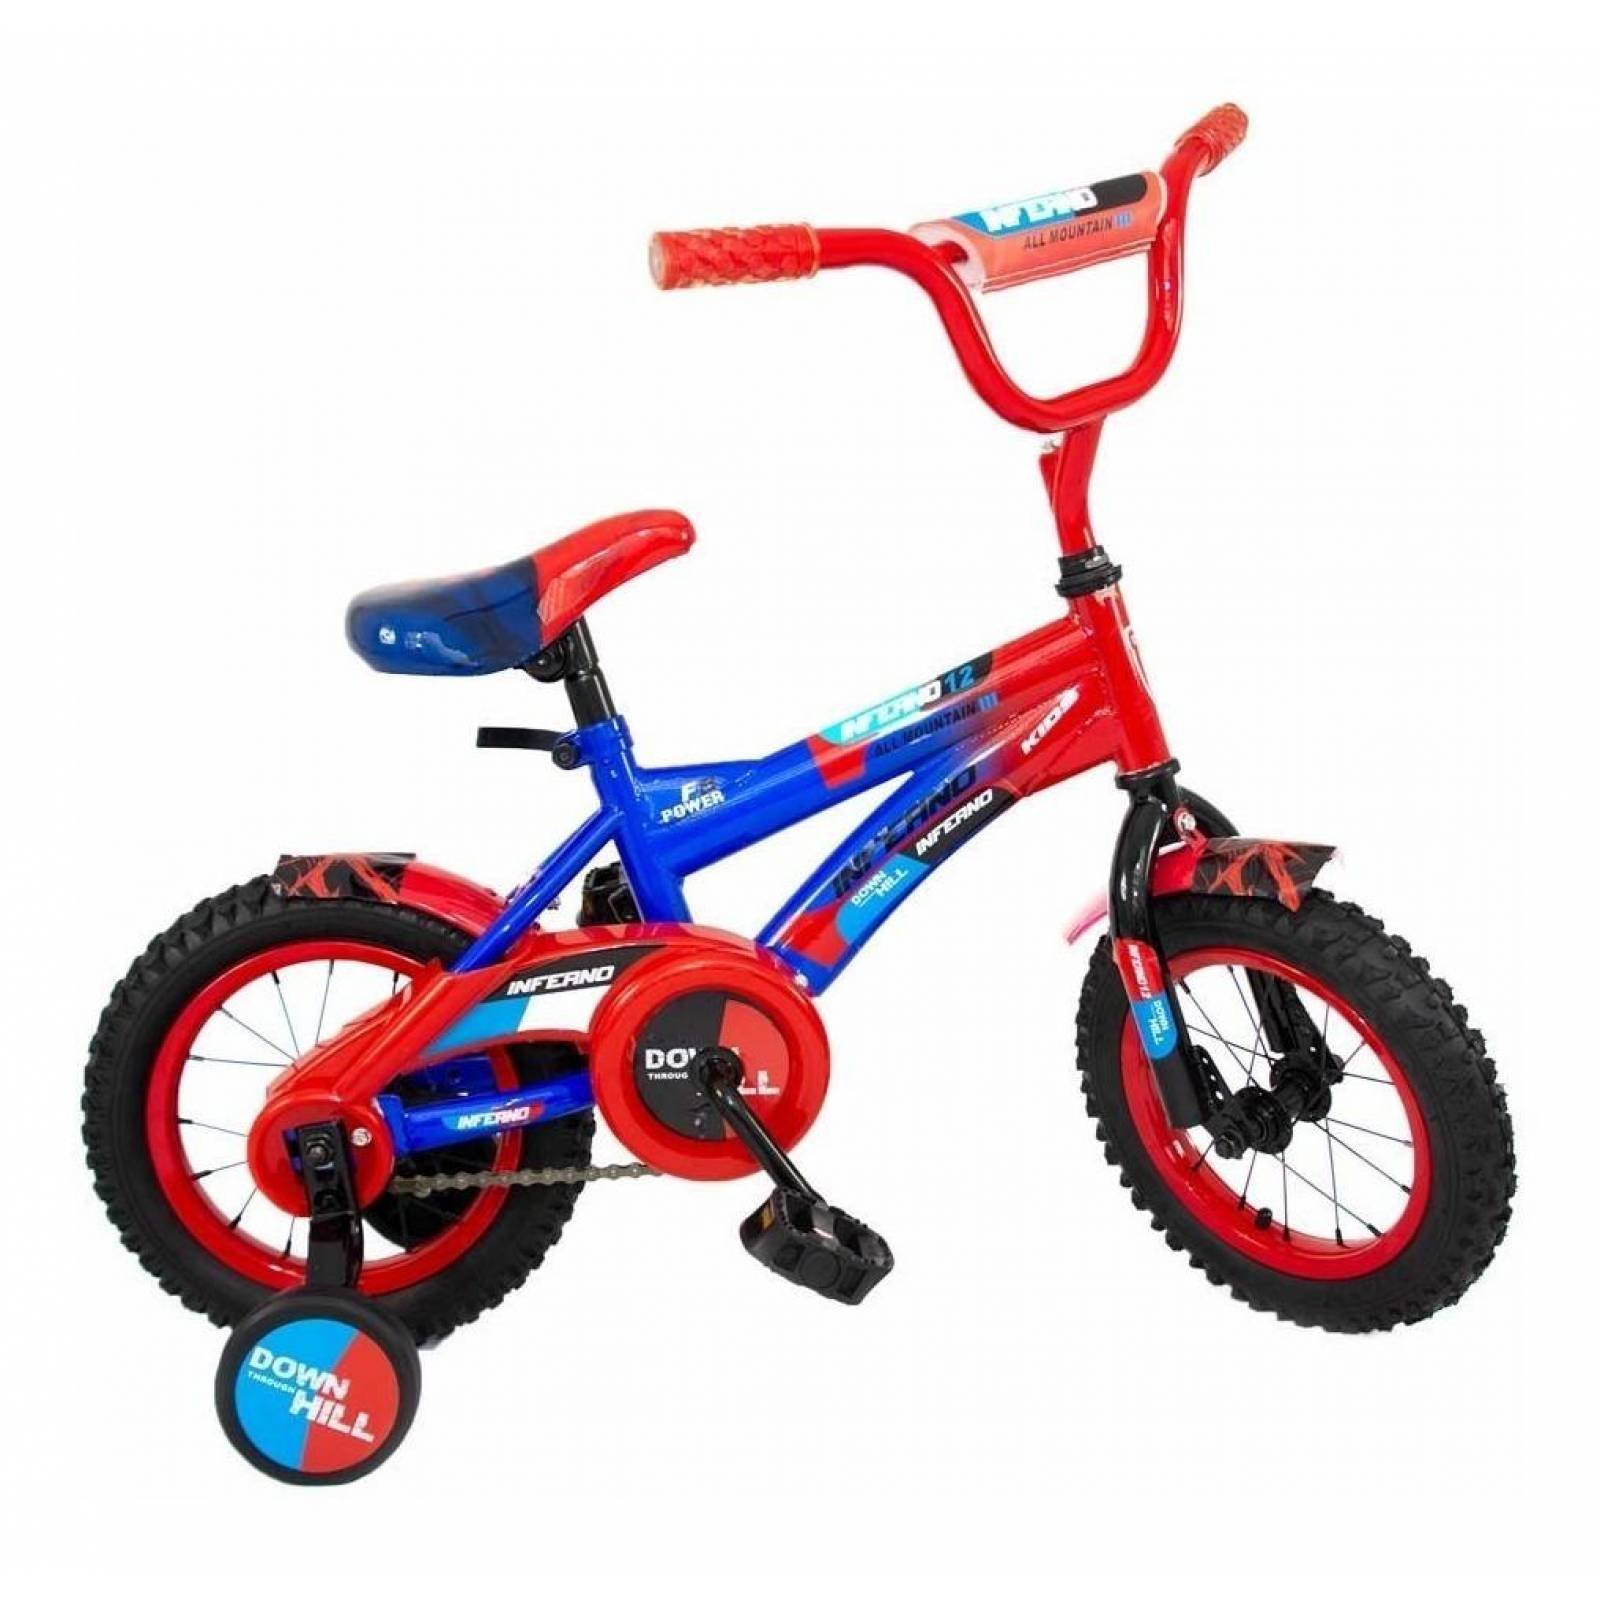 Bicicleta Infantil para Niño Rodada 12, Aire, 2-5 años o 85cm  - Azul